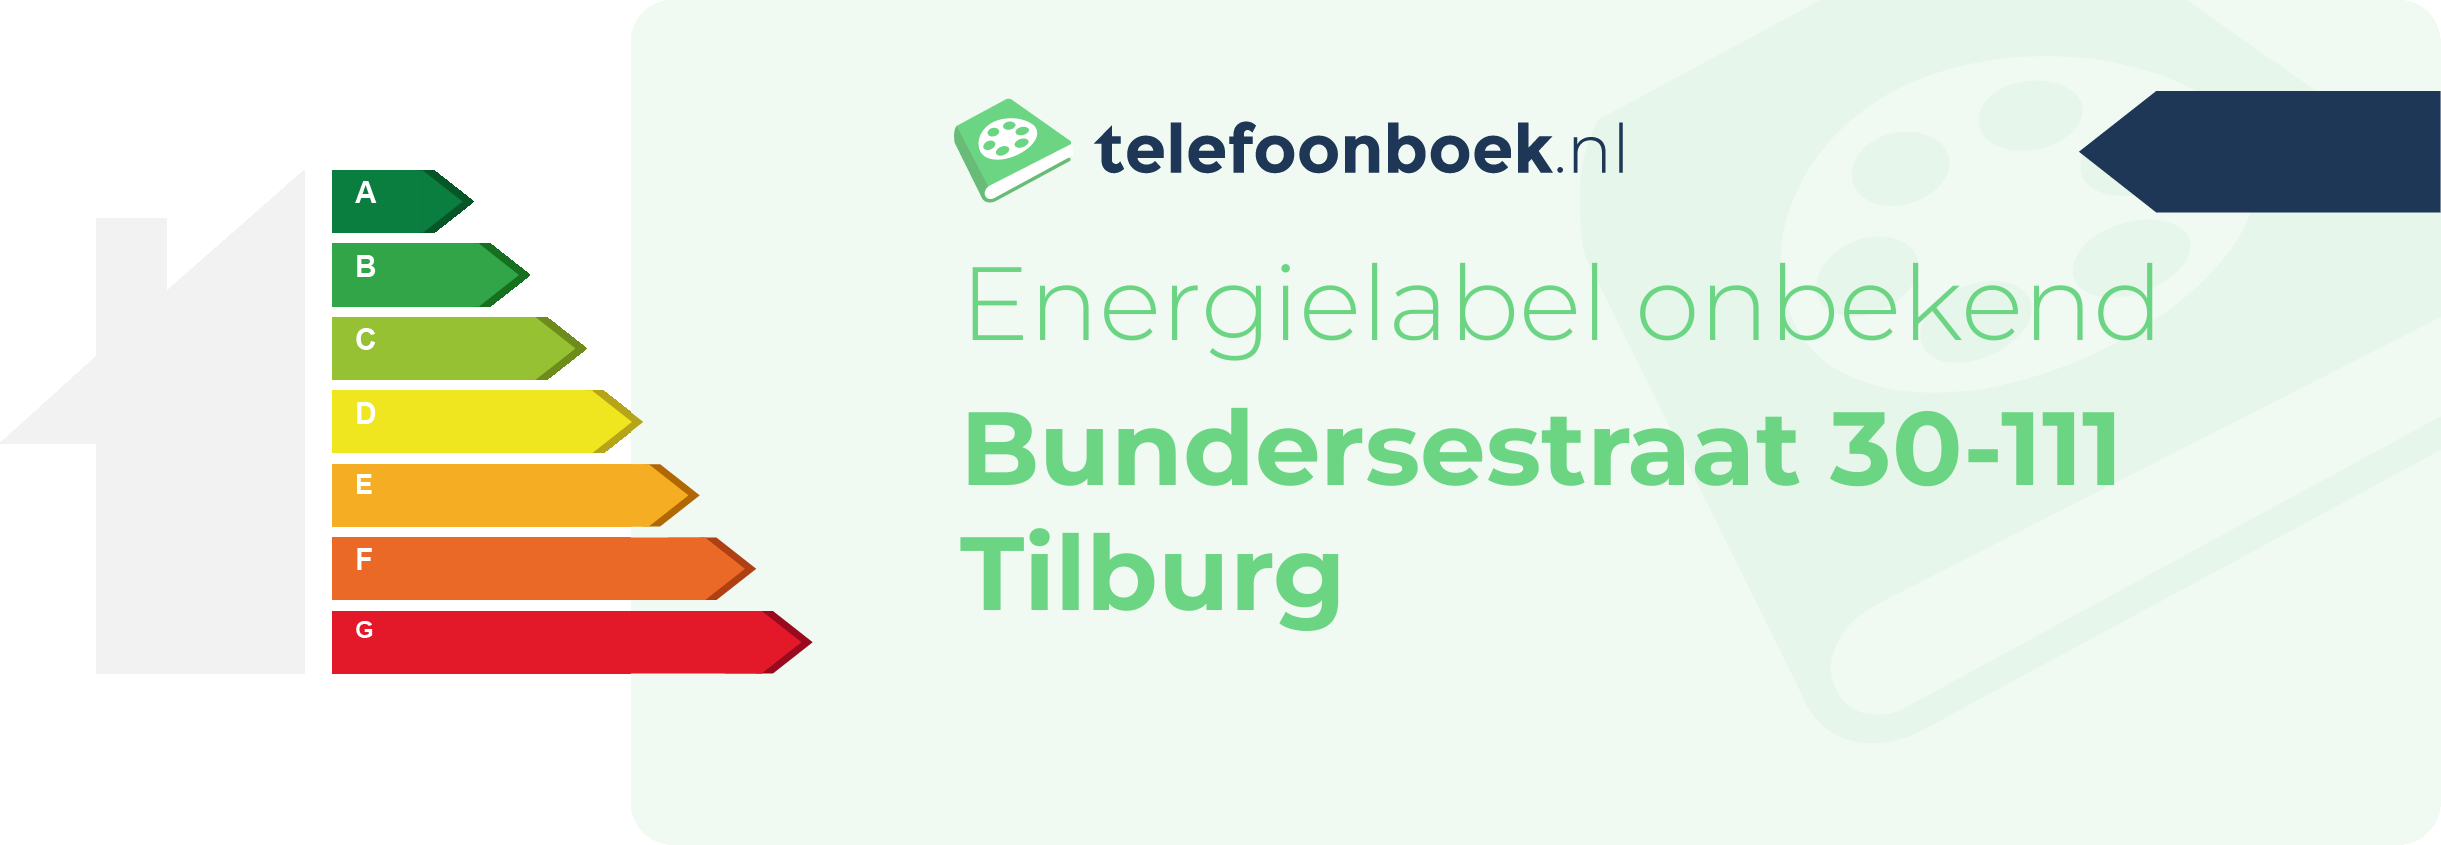 Energielabel Bundersestraat 30-111 Tilburg